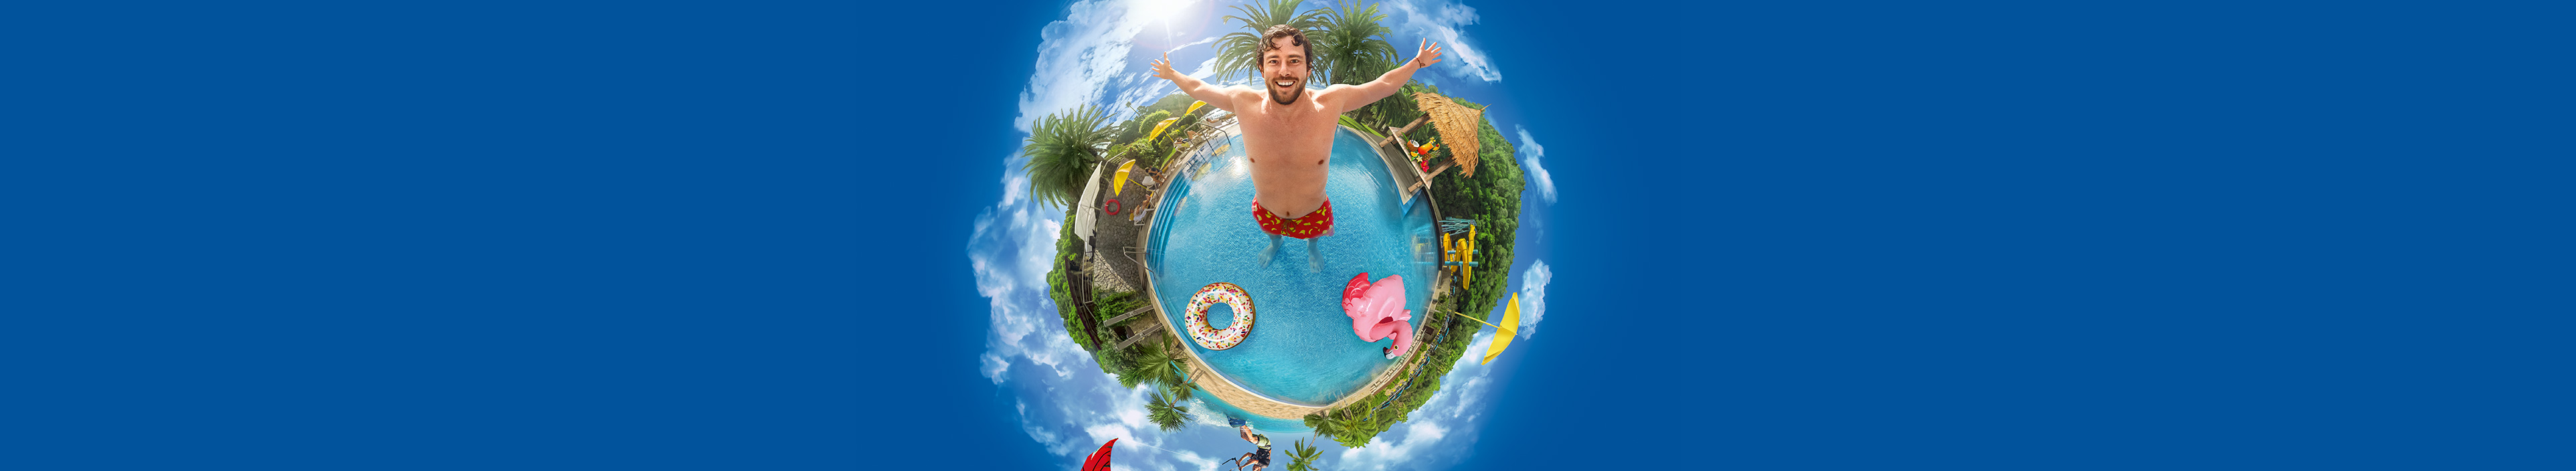 Mann in einem Swimmingpool, um ihn herum Palmen, ein Kitesurfer, Sonnenschirme.